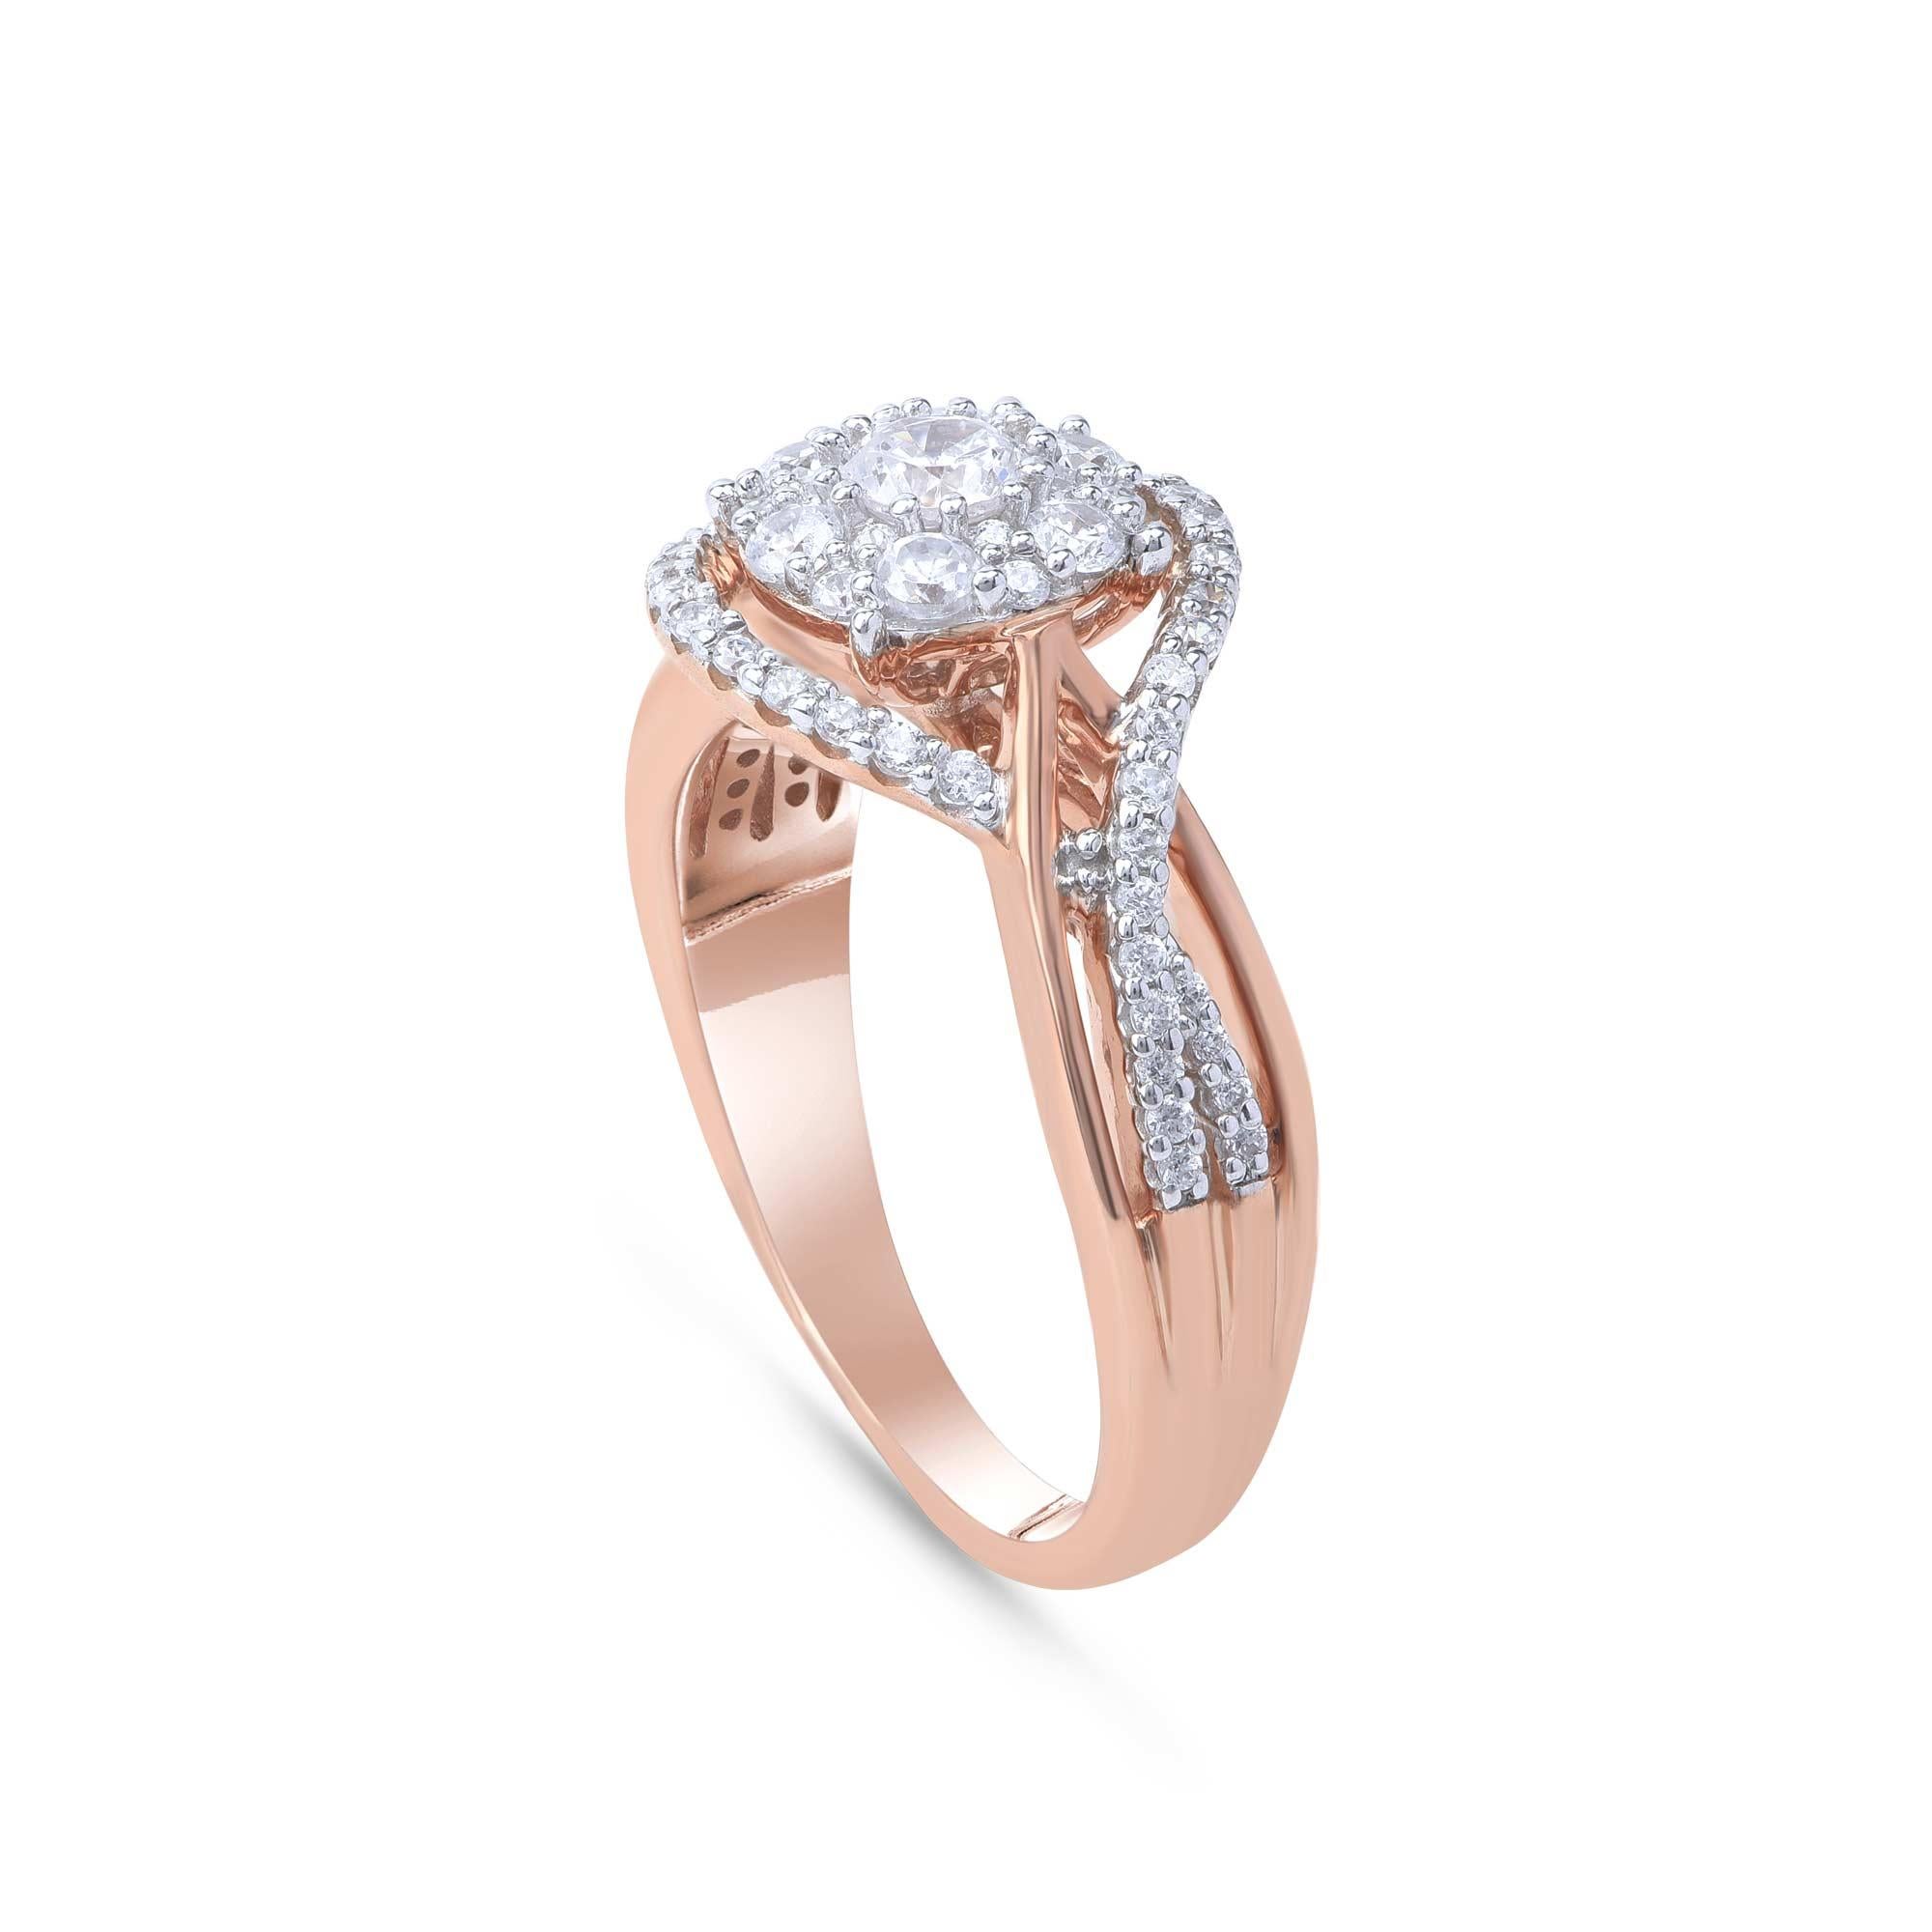 Cette magnifique bague de fiançailles est ornée de 67 diamants taille brillant sertis en griffe et fabriqués en or rose 18 KT. Les diamants sont classés Couleur H, Clarté I1.  

La couleur du métal et la taille de l'anneau peuvent être